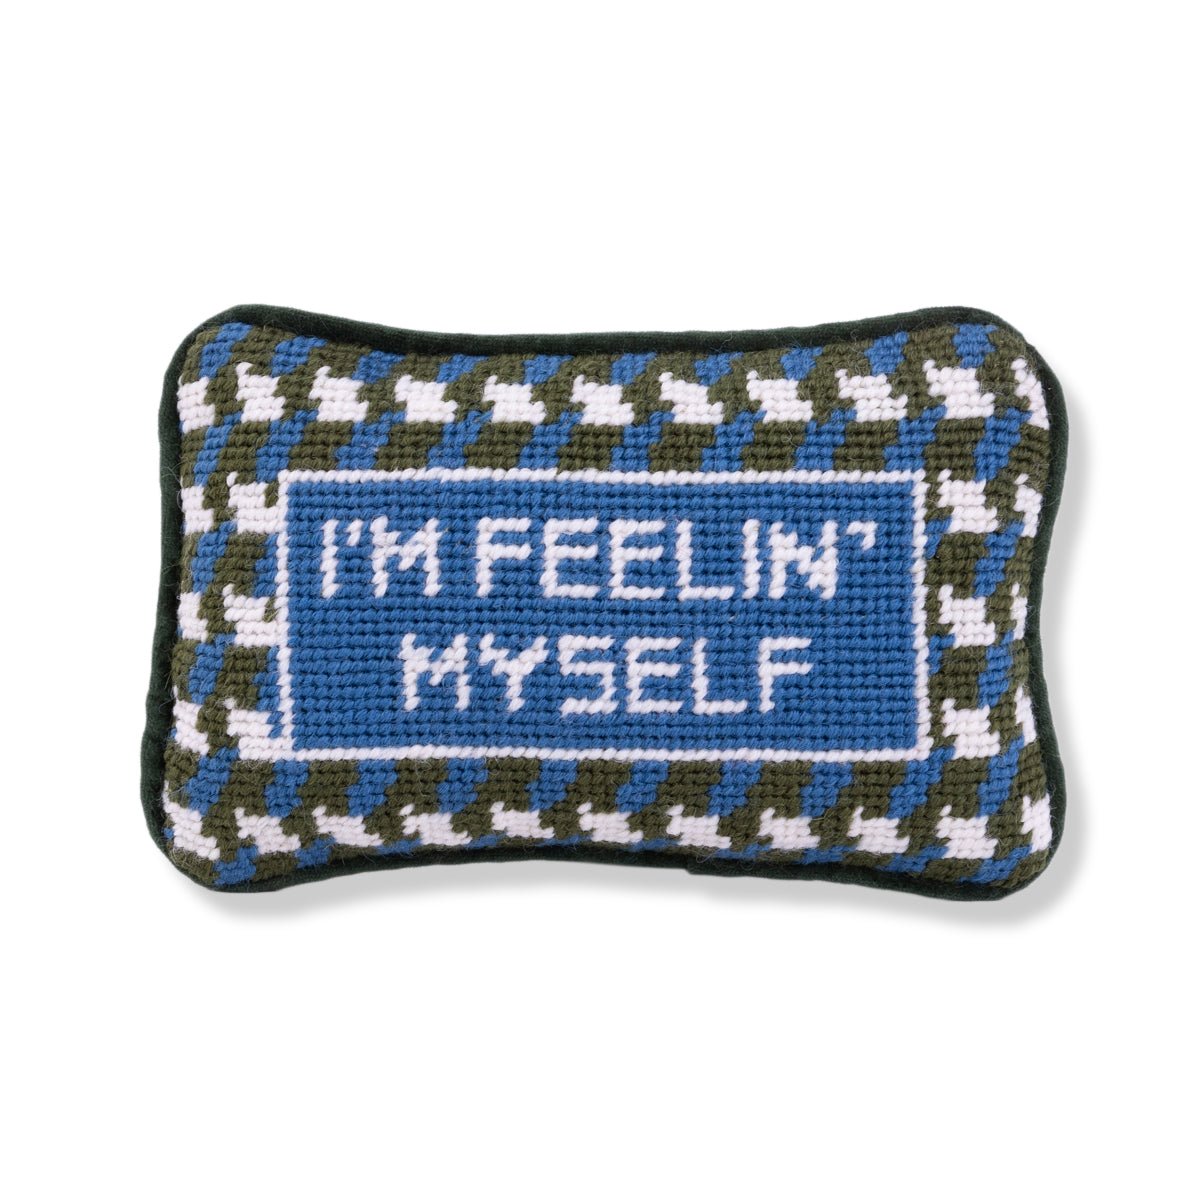 Feelin' Myself Mini Needlepoint Pillow - Throw Pillows - Furbish Studio - The Grove